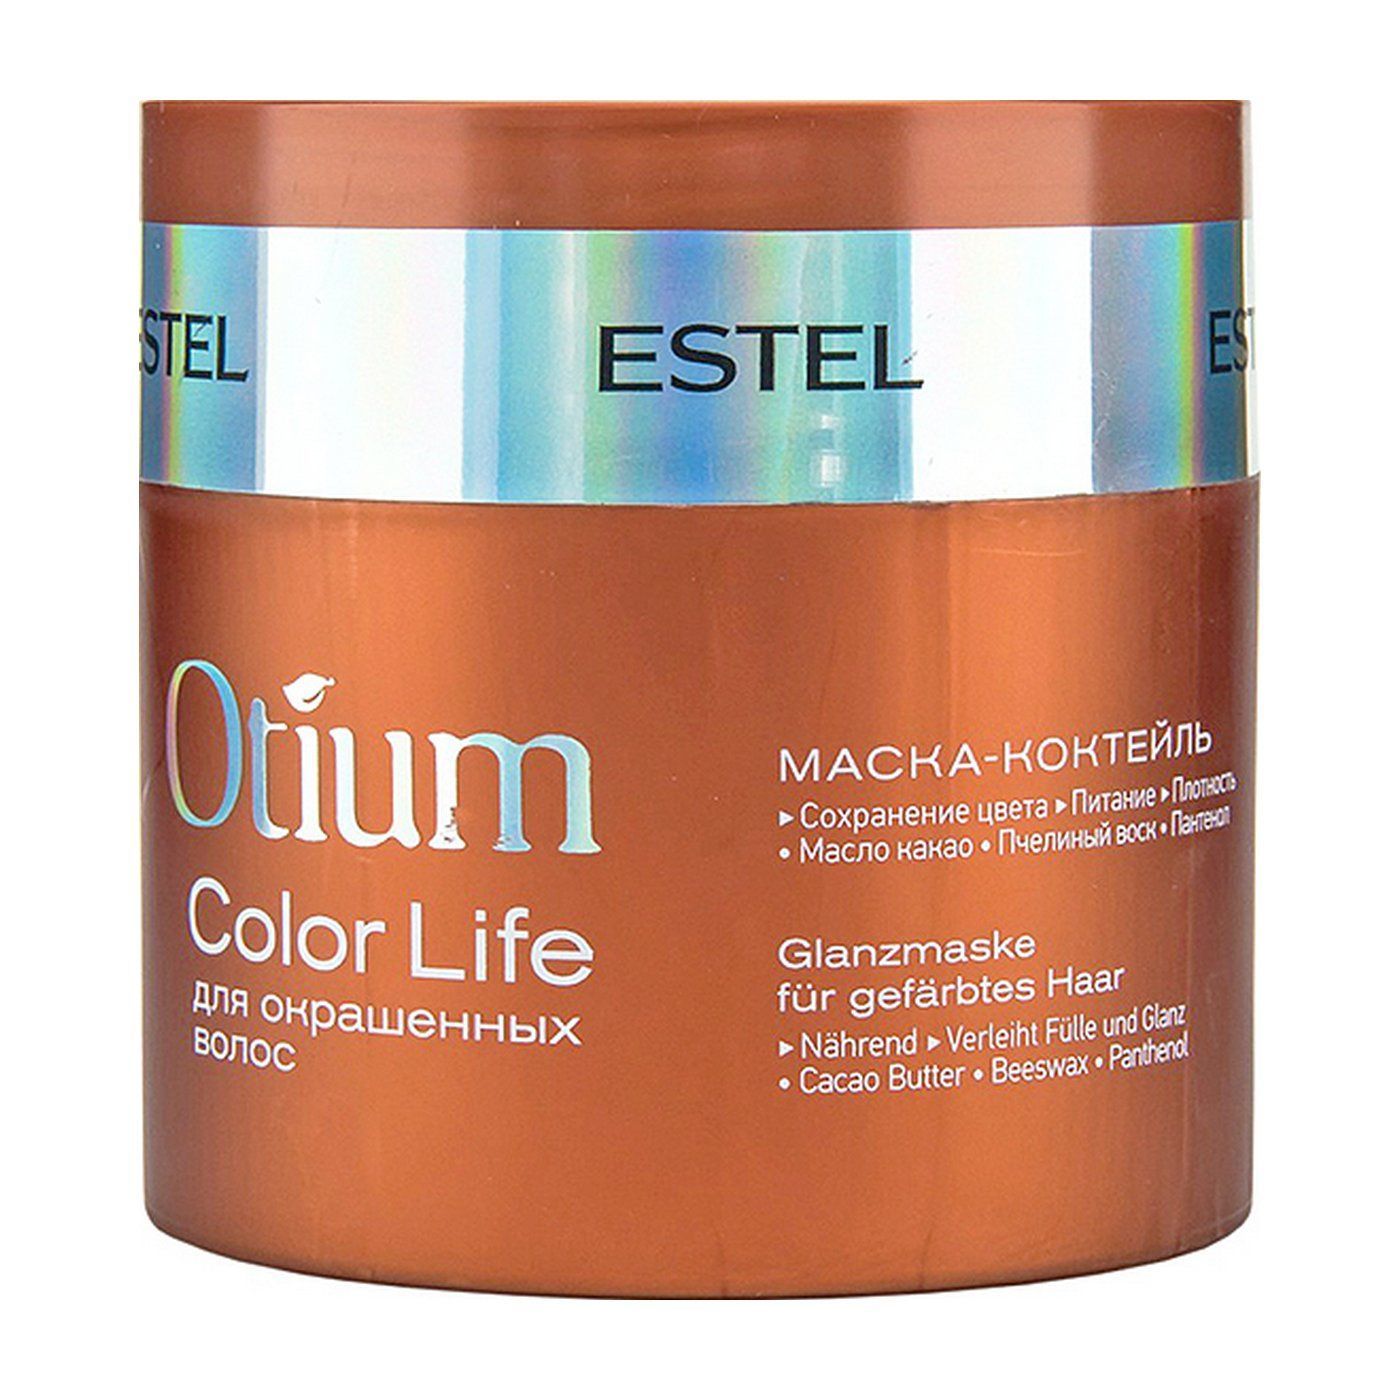 Otium color life. Estel Otium Color Life маска. Маска-коктейль для окрашенных волос Otium Color Life, 300 мл. Estel/ маска-коктейль для окрашенных волос Otium Color Life (300 мл). Маска Эстель отиум для окрашенных волос.